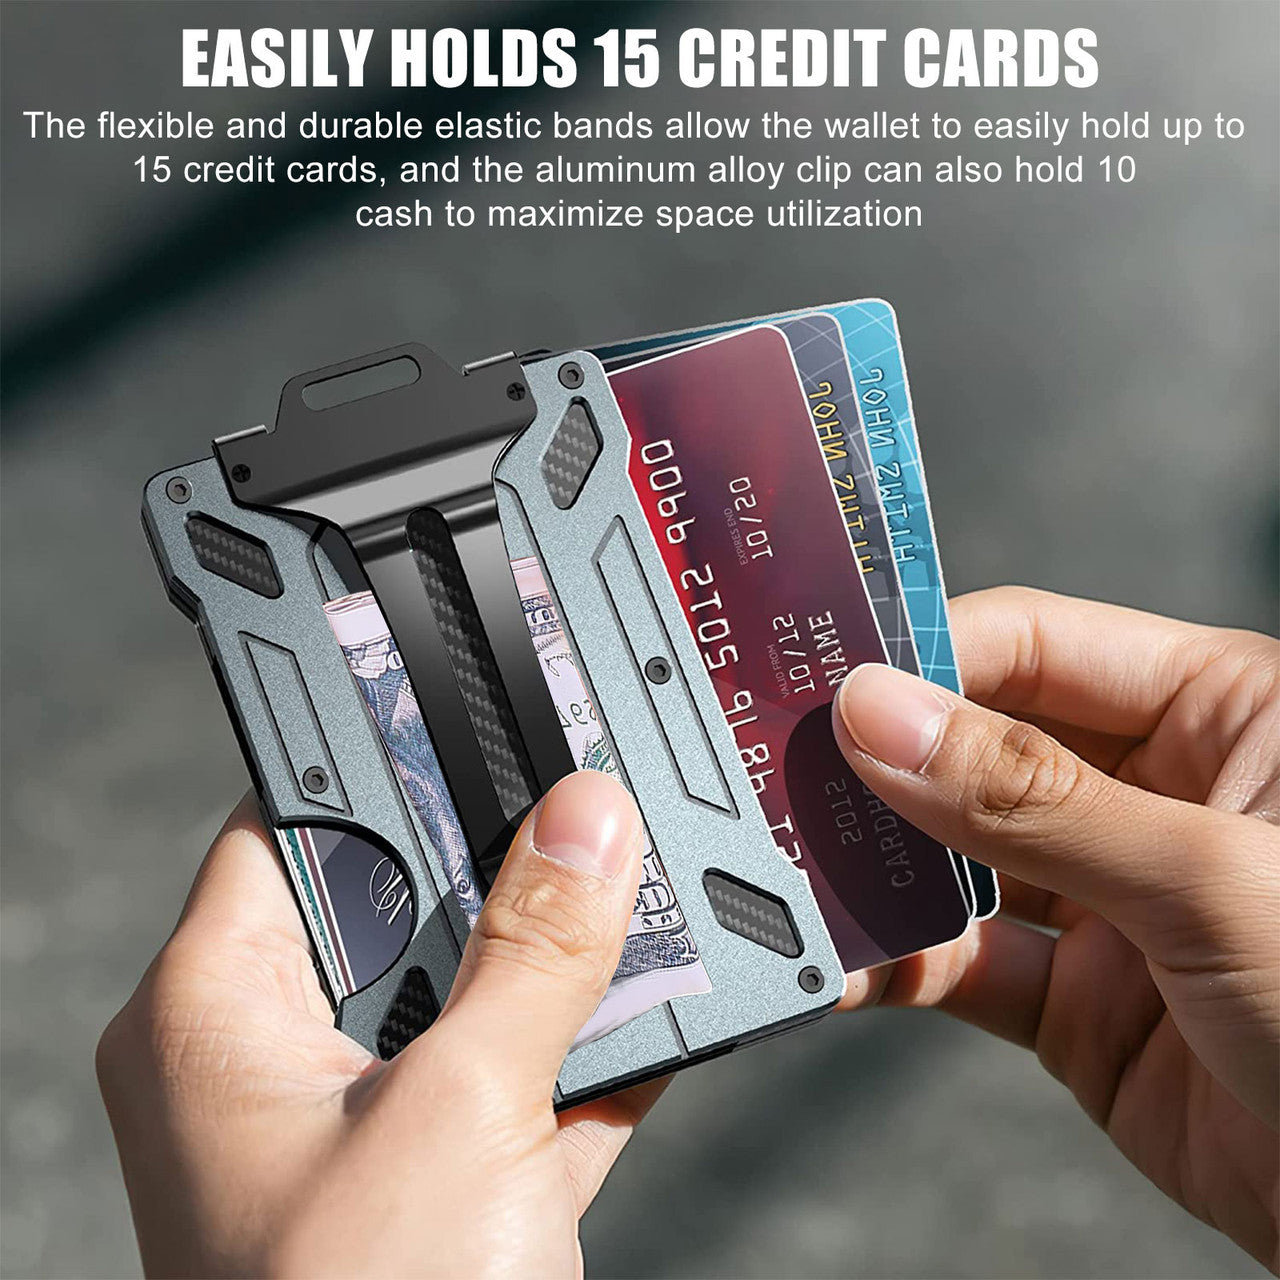 Men's Aluminum Alloy Slim Card Holder - Credit Card Holder,Slim Wallet,Can Carry a Little Cash Transparent ID Holder (Black)